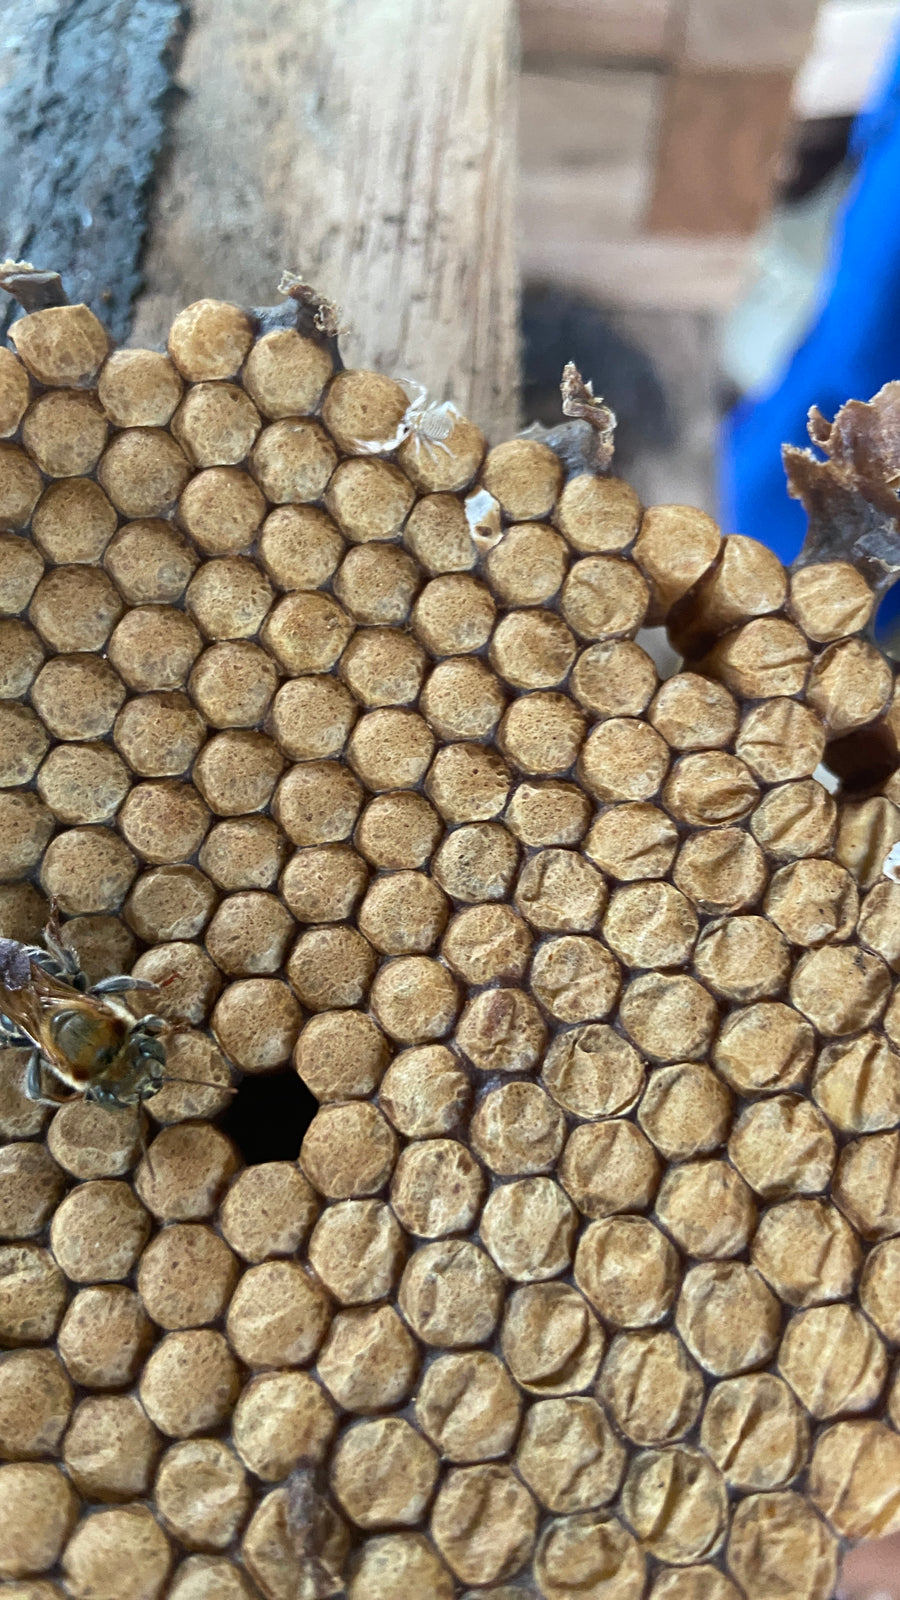 生蜂蜜 アマゾンのハリナシハチミツ 『メリポナグランディス』